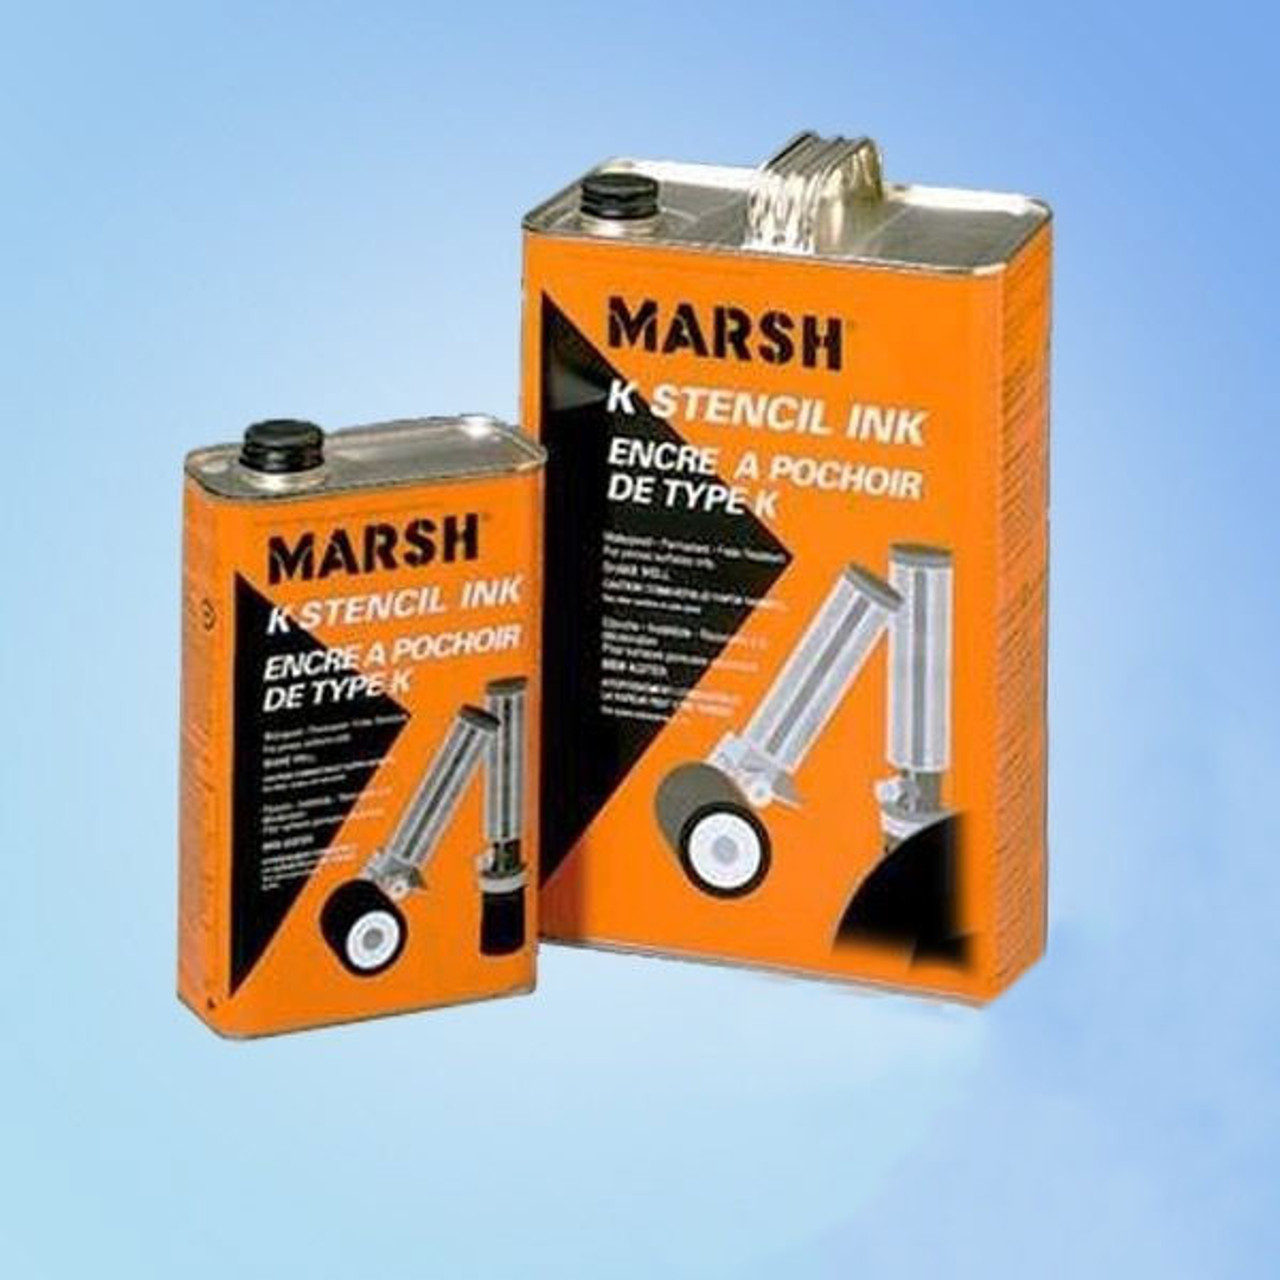 Marsh 88 - Black Dye Marker